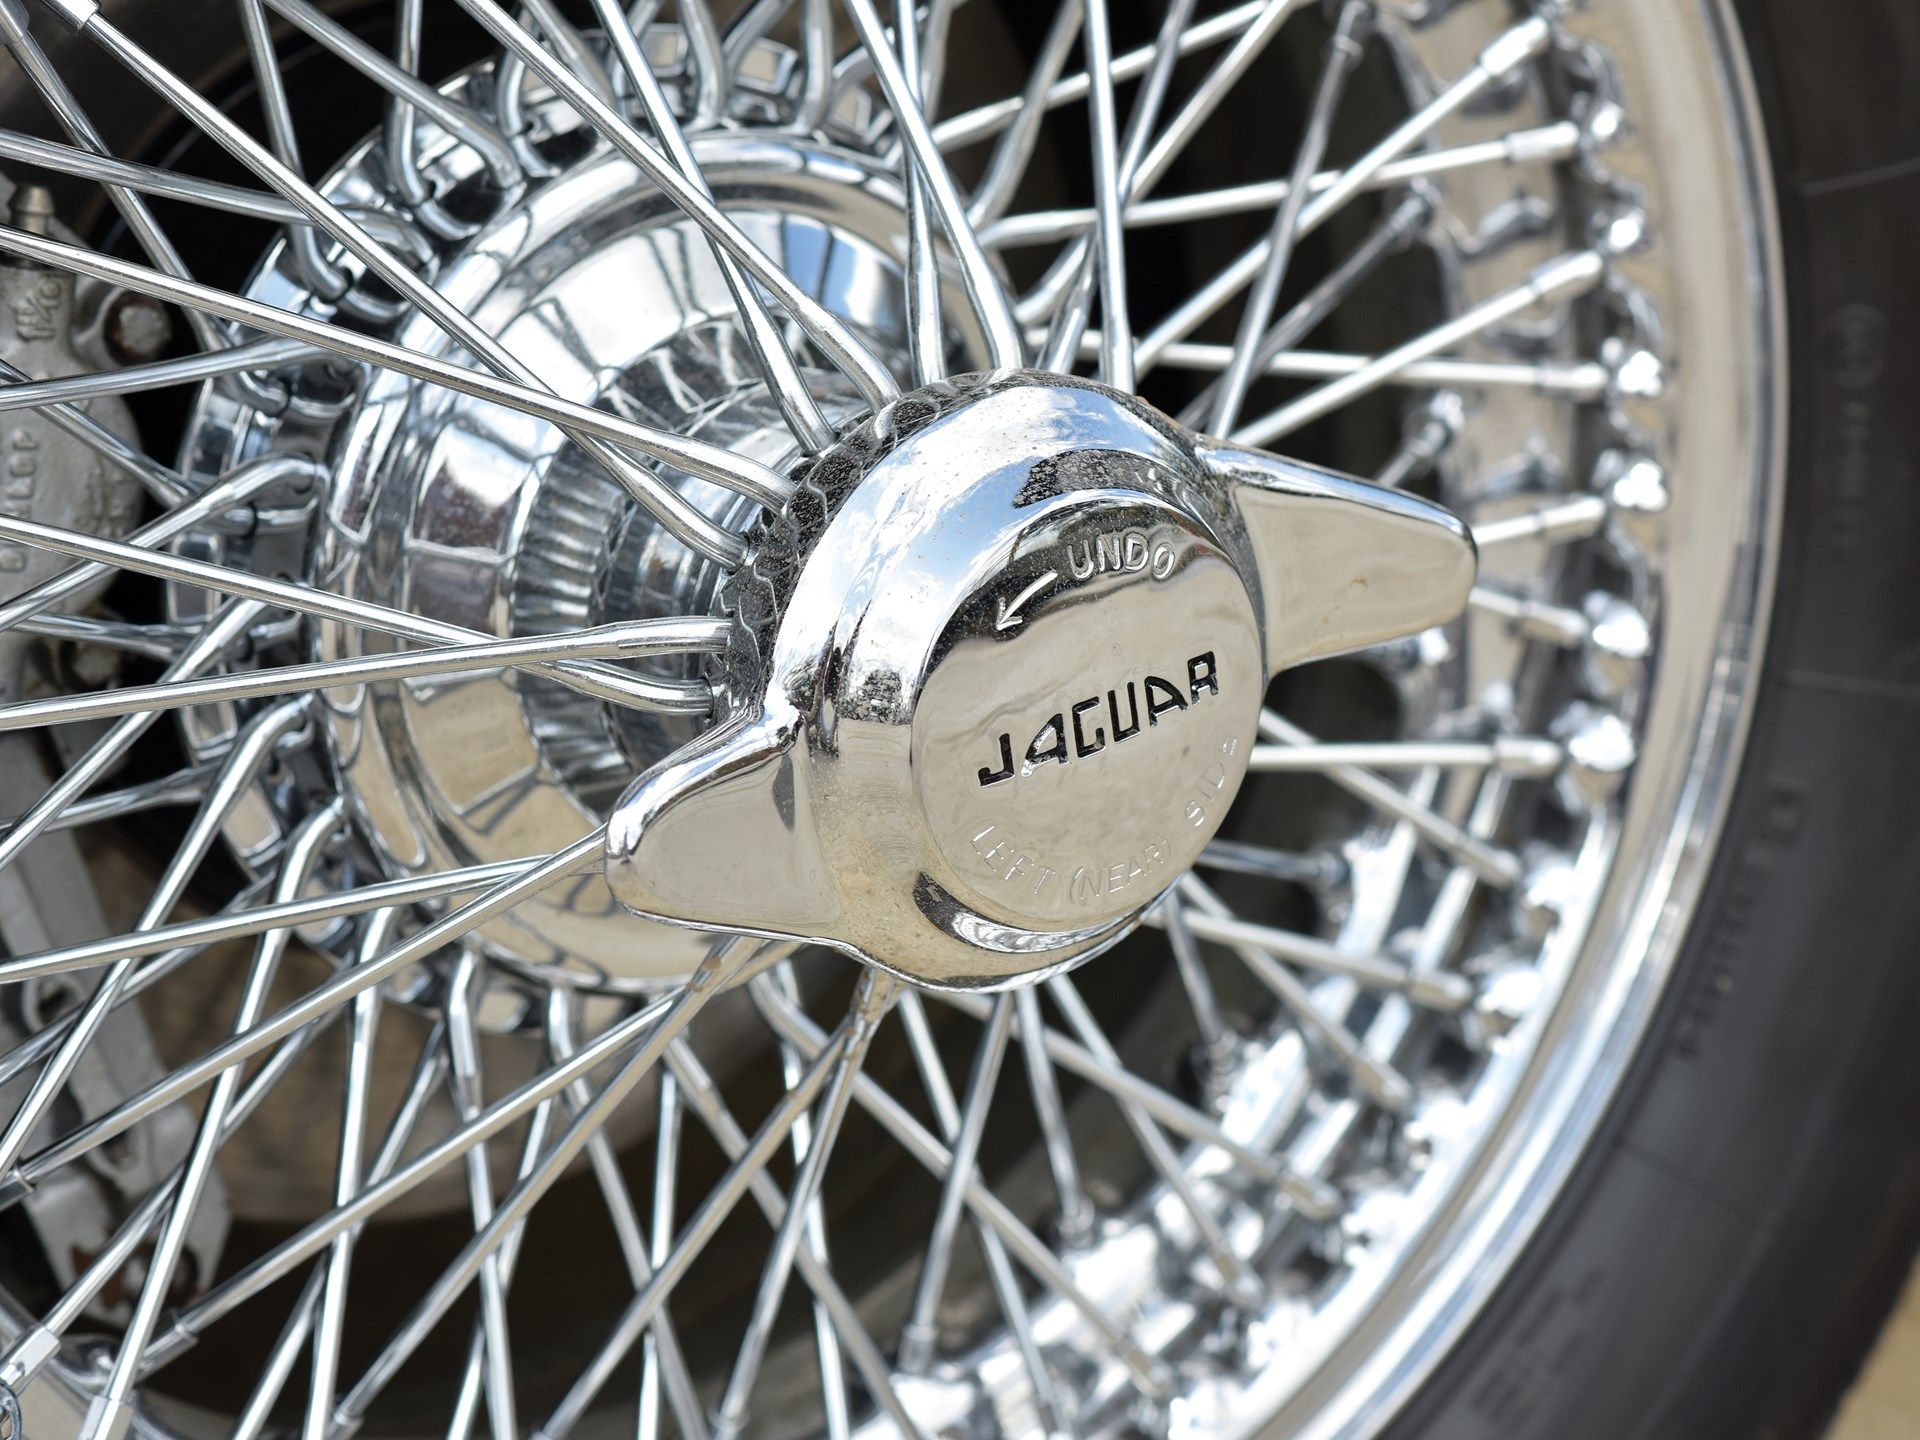 1960 Jaguar XK 150 S 3.8 Drophead Coupe